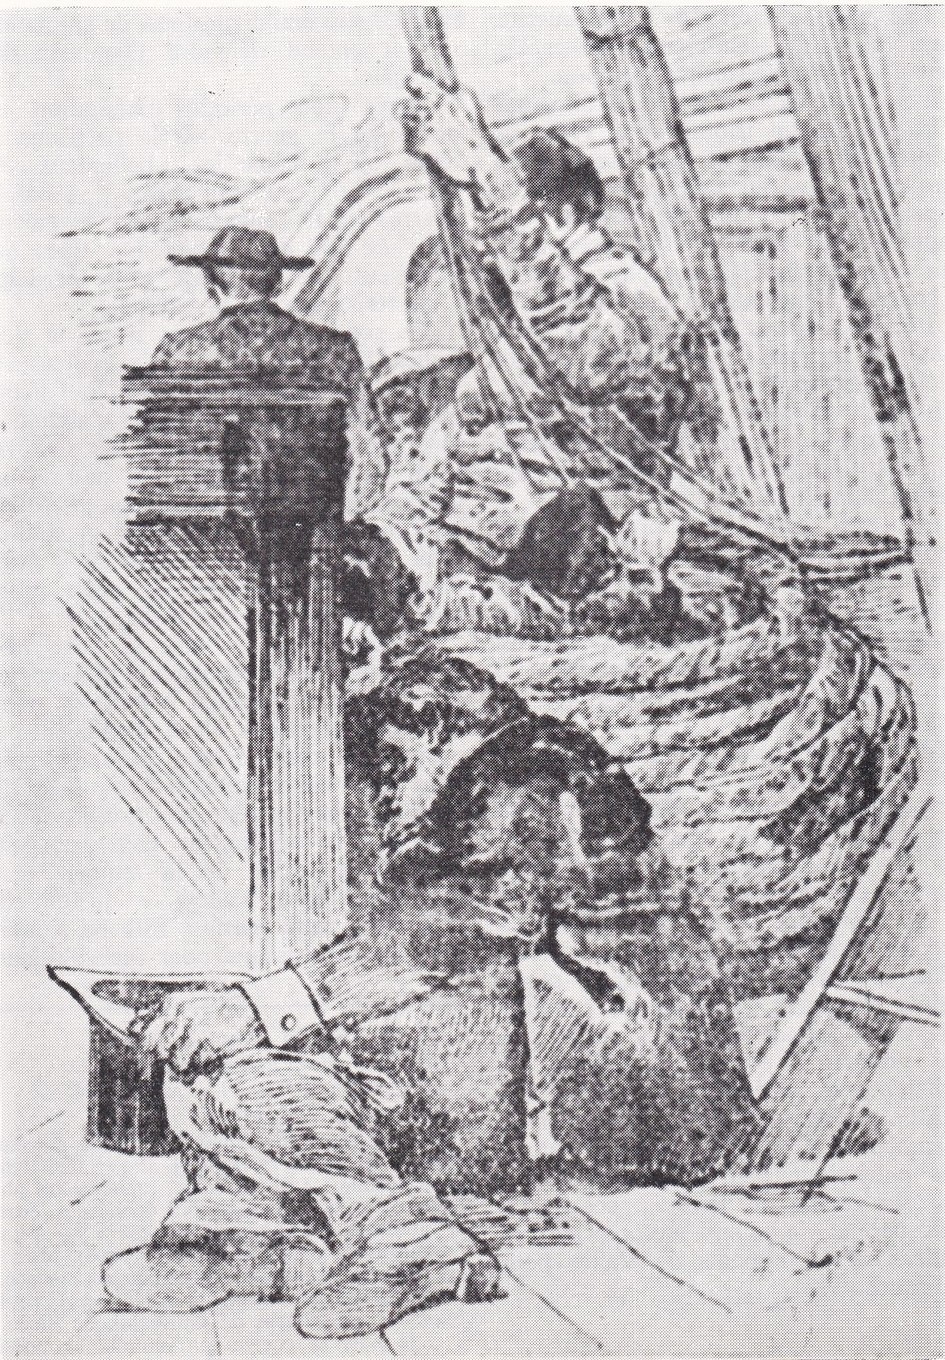 Jules Vallès sur le bateau qui le ramenait en France. Dessin d'Auguste Lançon publié dans "Le Cri du Peuple"